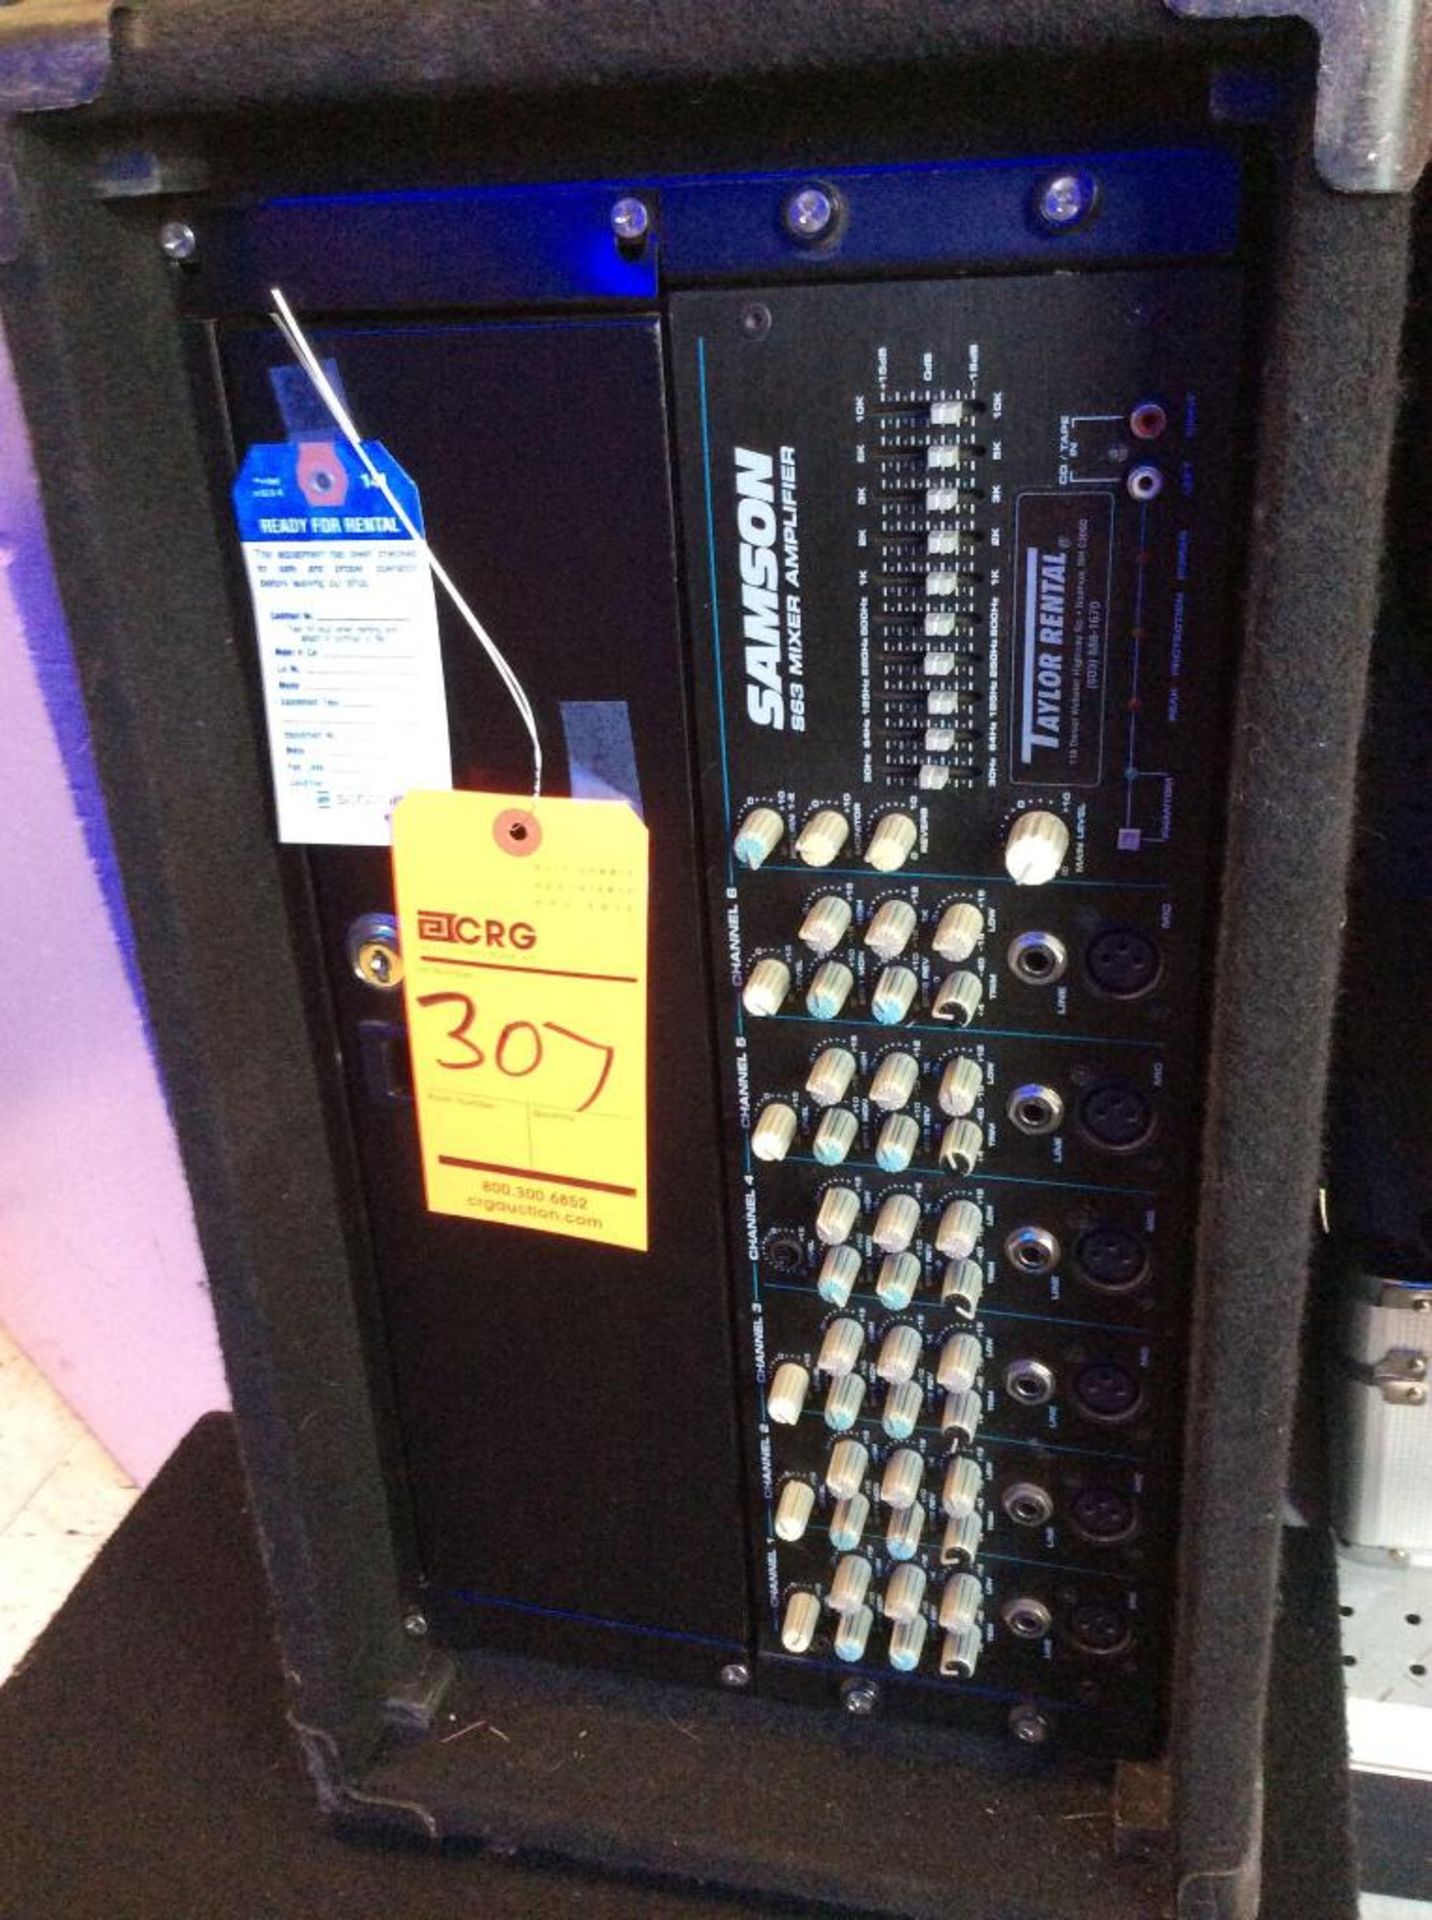 Samson 210 watt s63 mixer amplifier with set of speakers